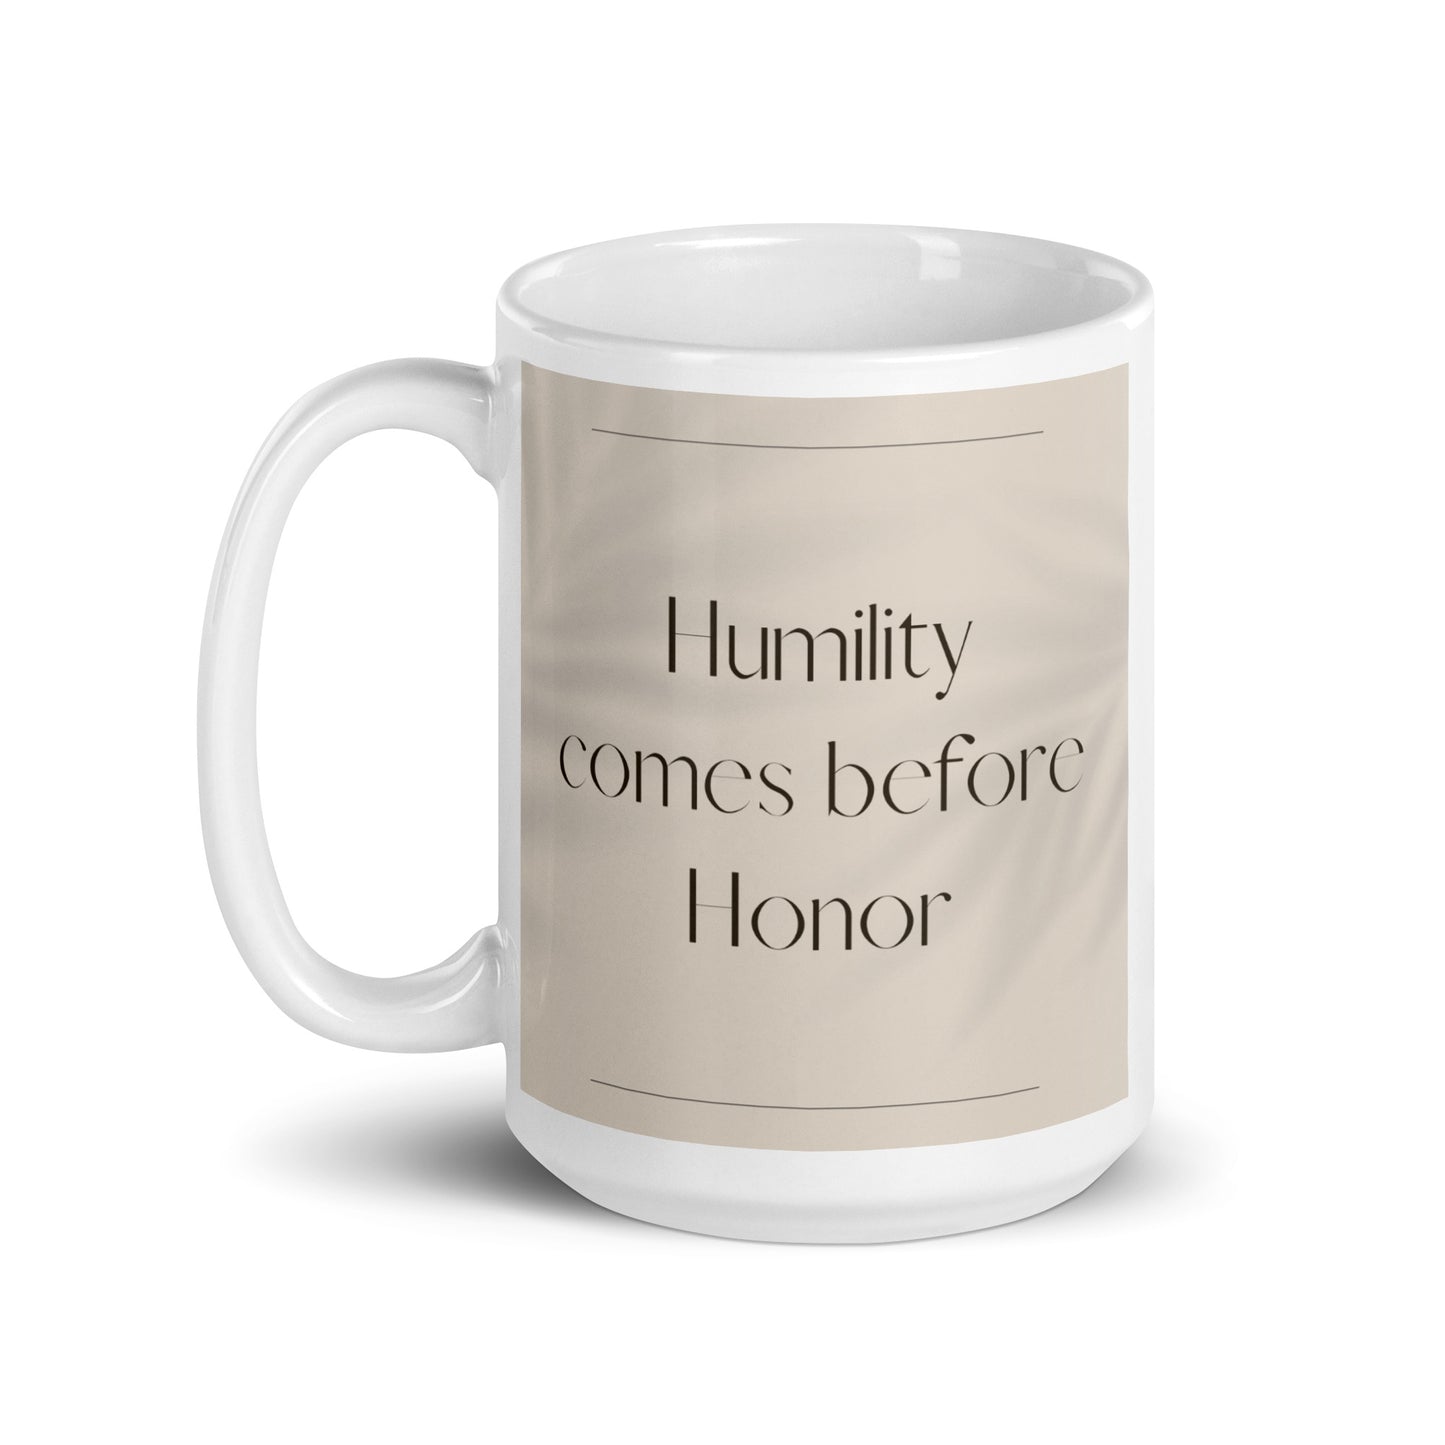 Humility comes before honor Elegant White glossy mug